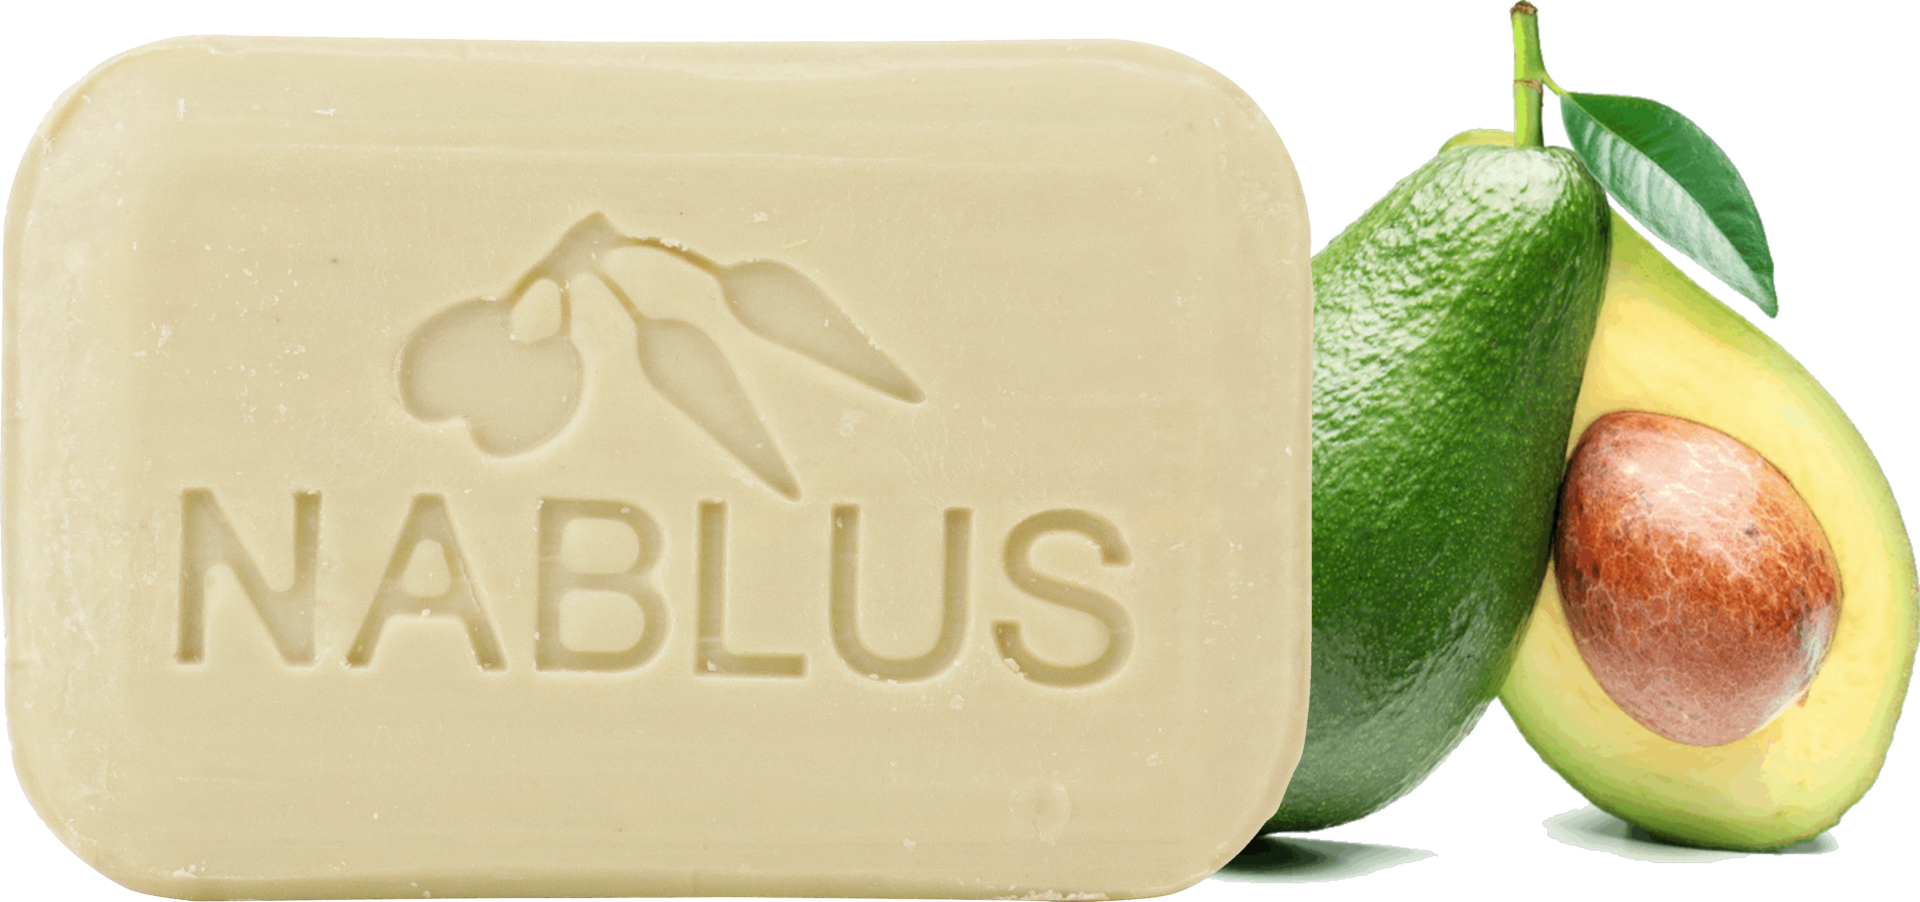 ナーブルスソープ NABLUS SOAP アボカド石鹸 ひどい乾燥・透明感 オーガニック石鹸